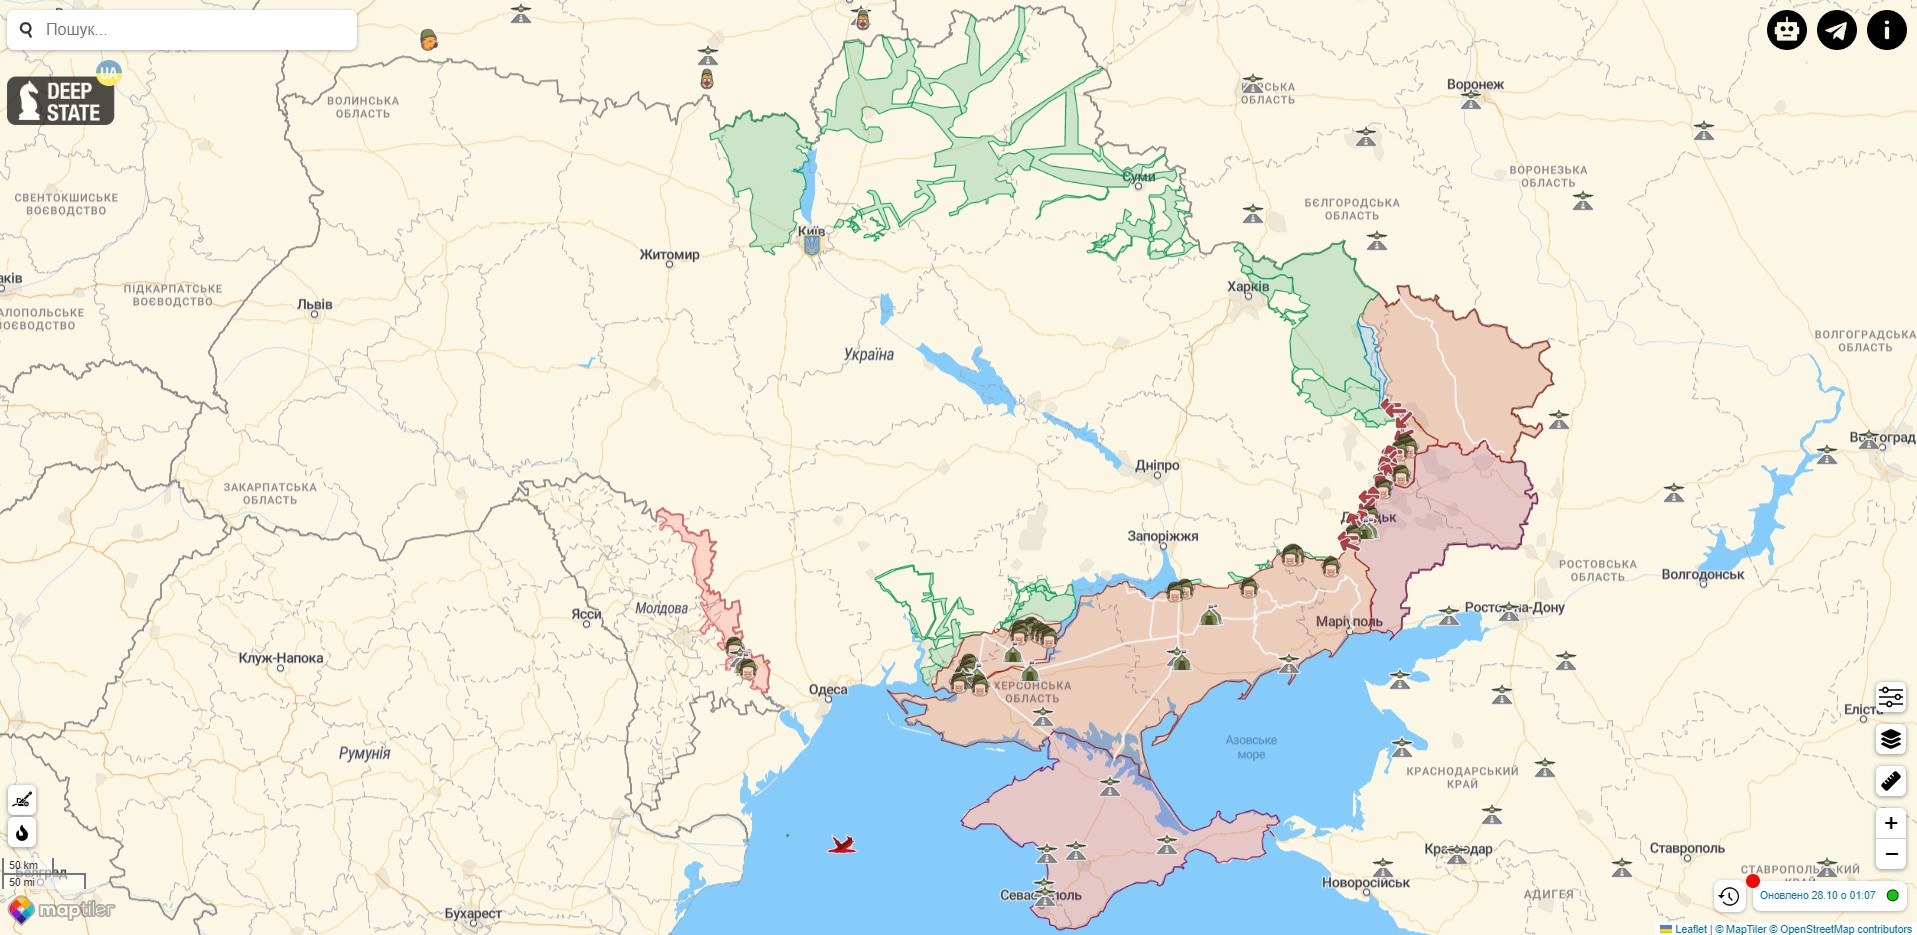 Боевые действия против РФ на территории Украины на 28 октября